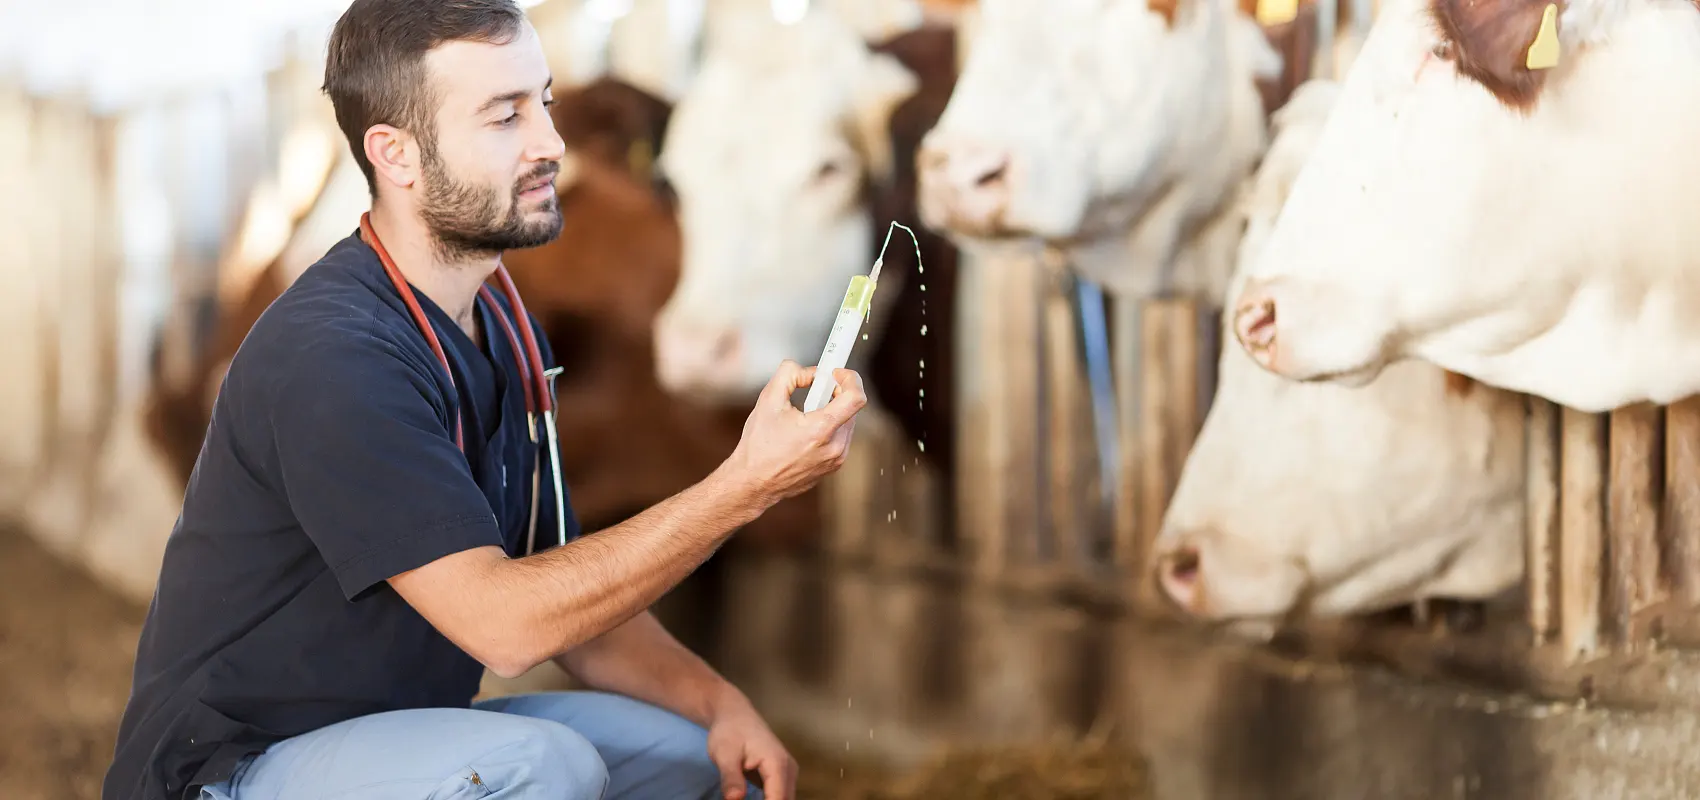 Mi az állattenyésztés állatorvosi szak?